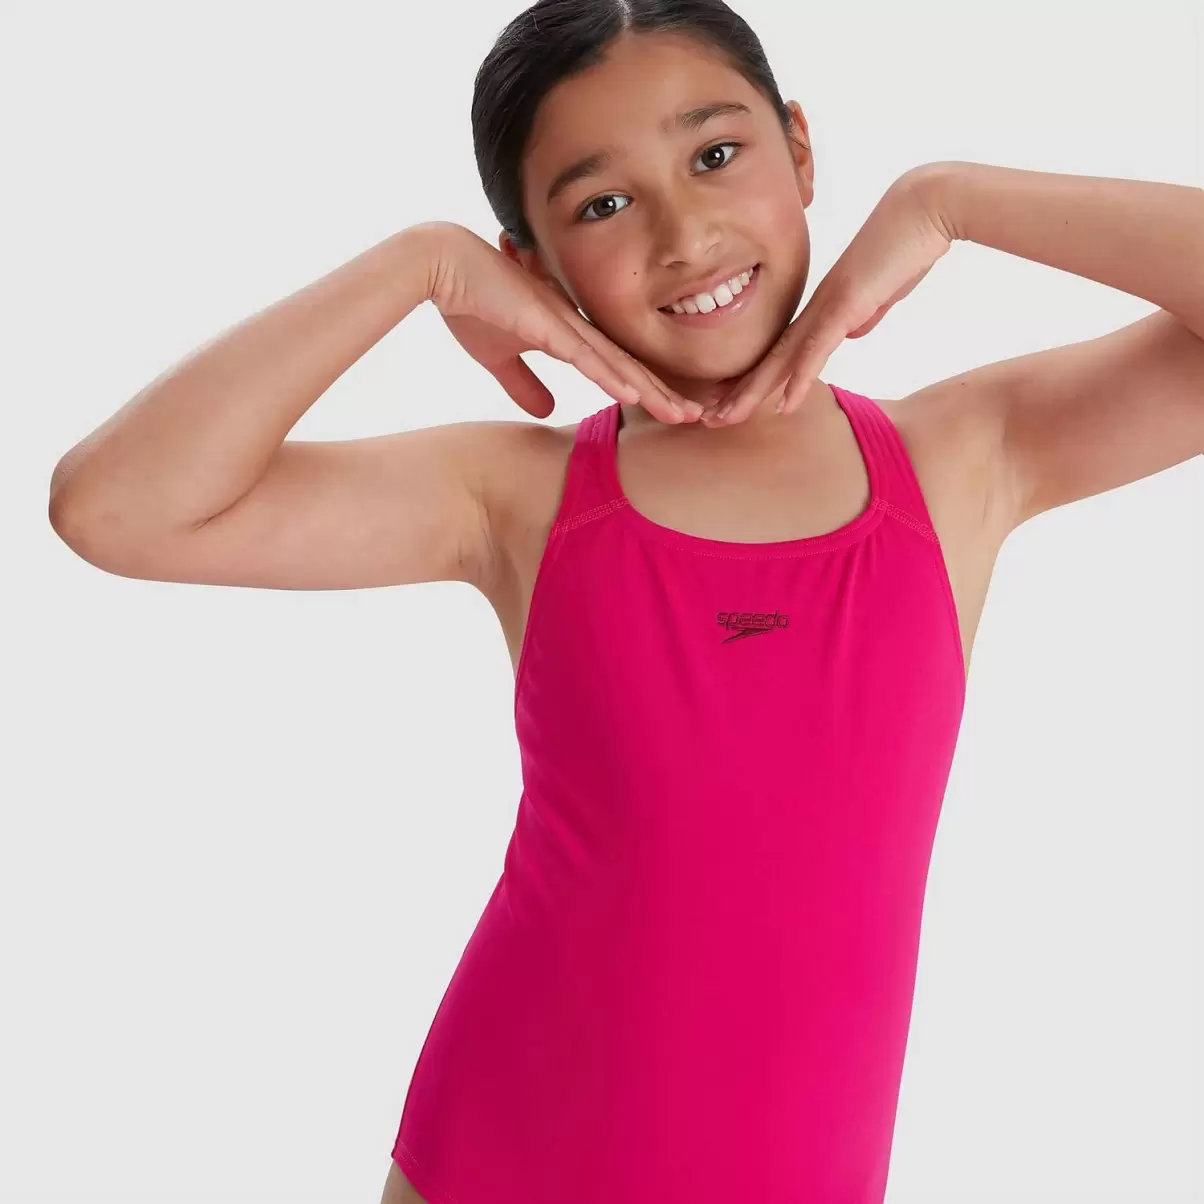 Kinder Mädchen Eco Endurance+ Medalist Badeanzug Pink Mädchen Bademode Speedo - 4